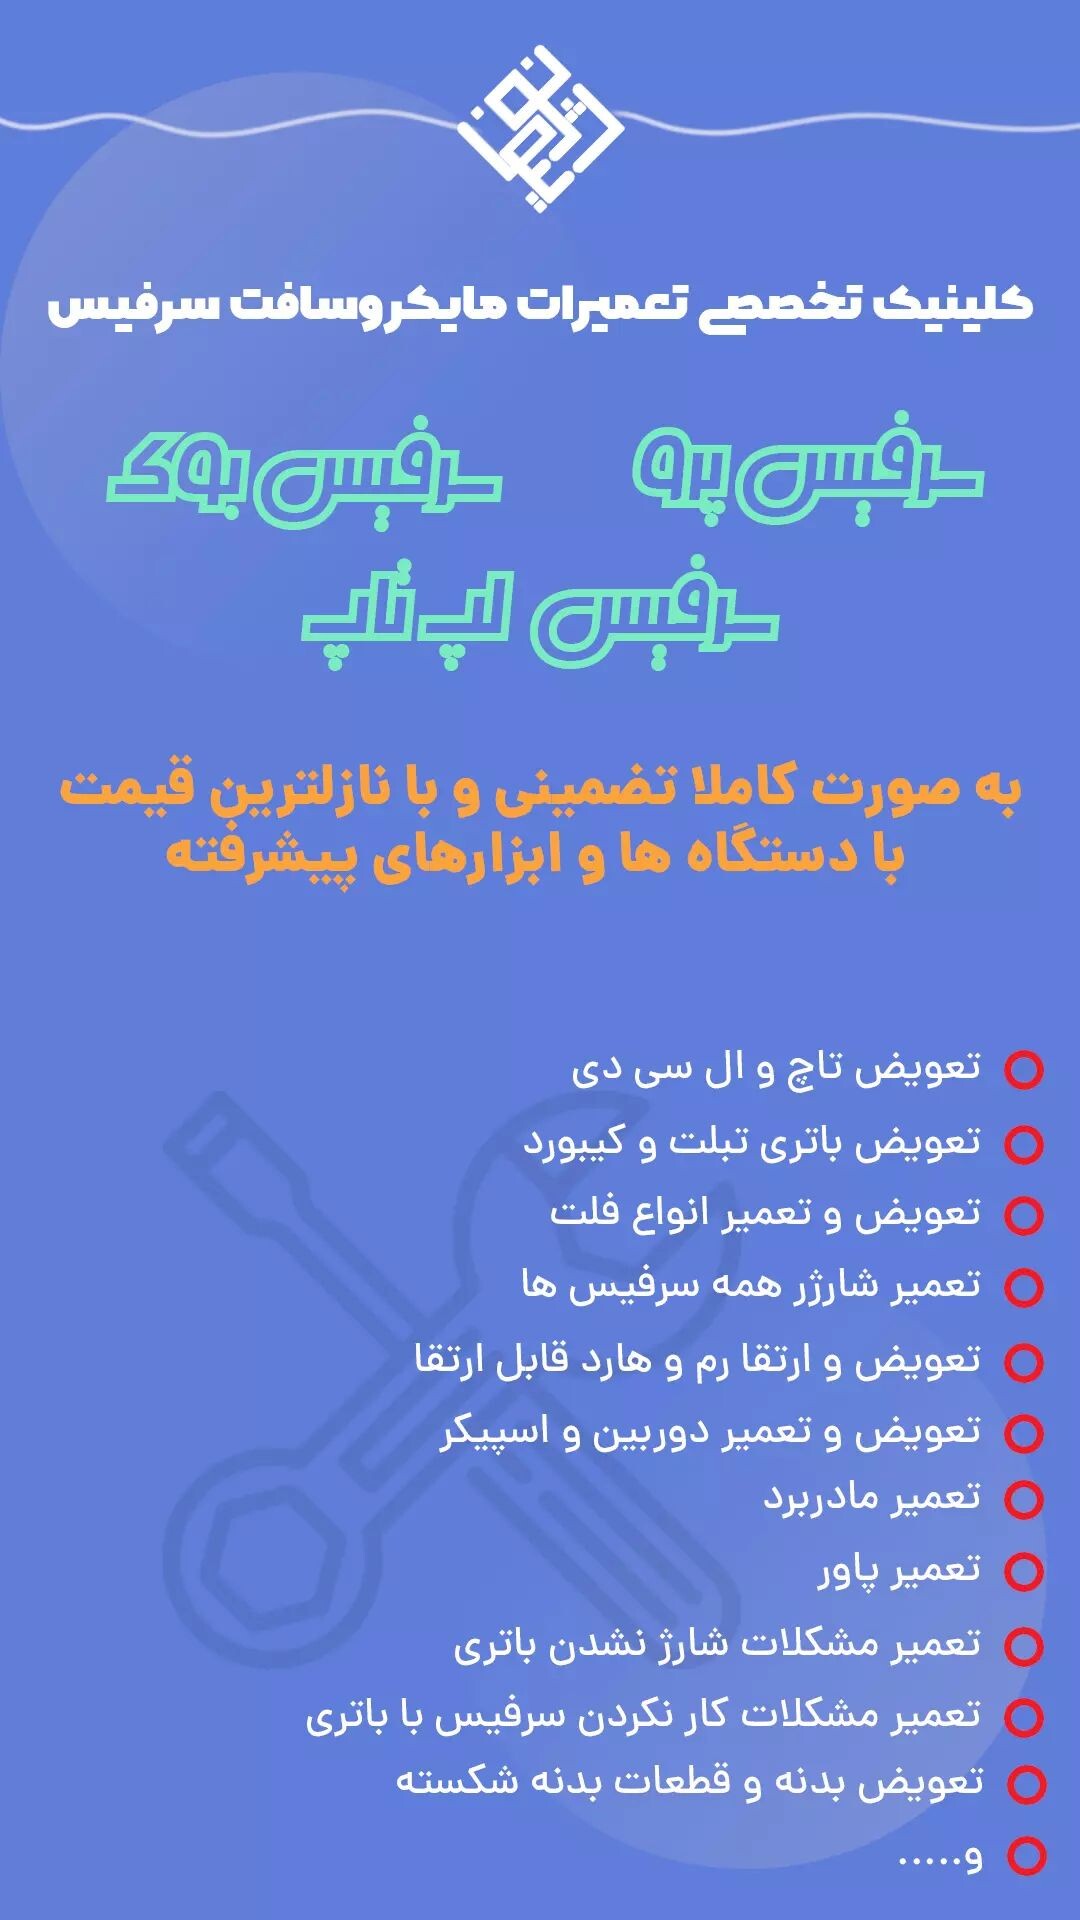 مرکز تعمیرات تخصصی سرفیس در ایران نوژینو